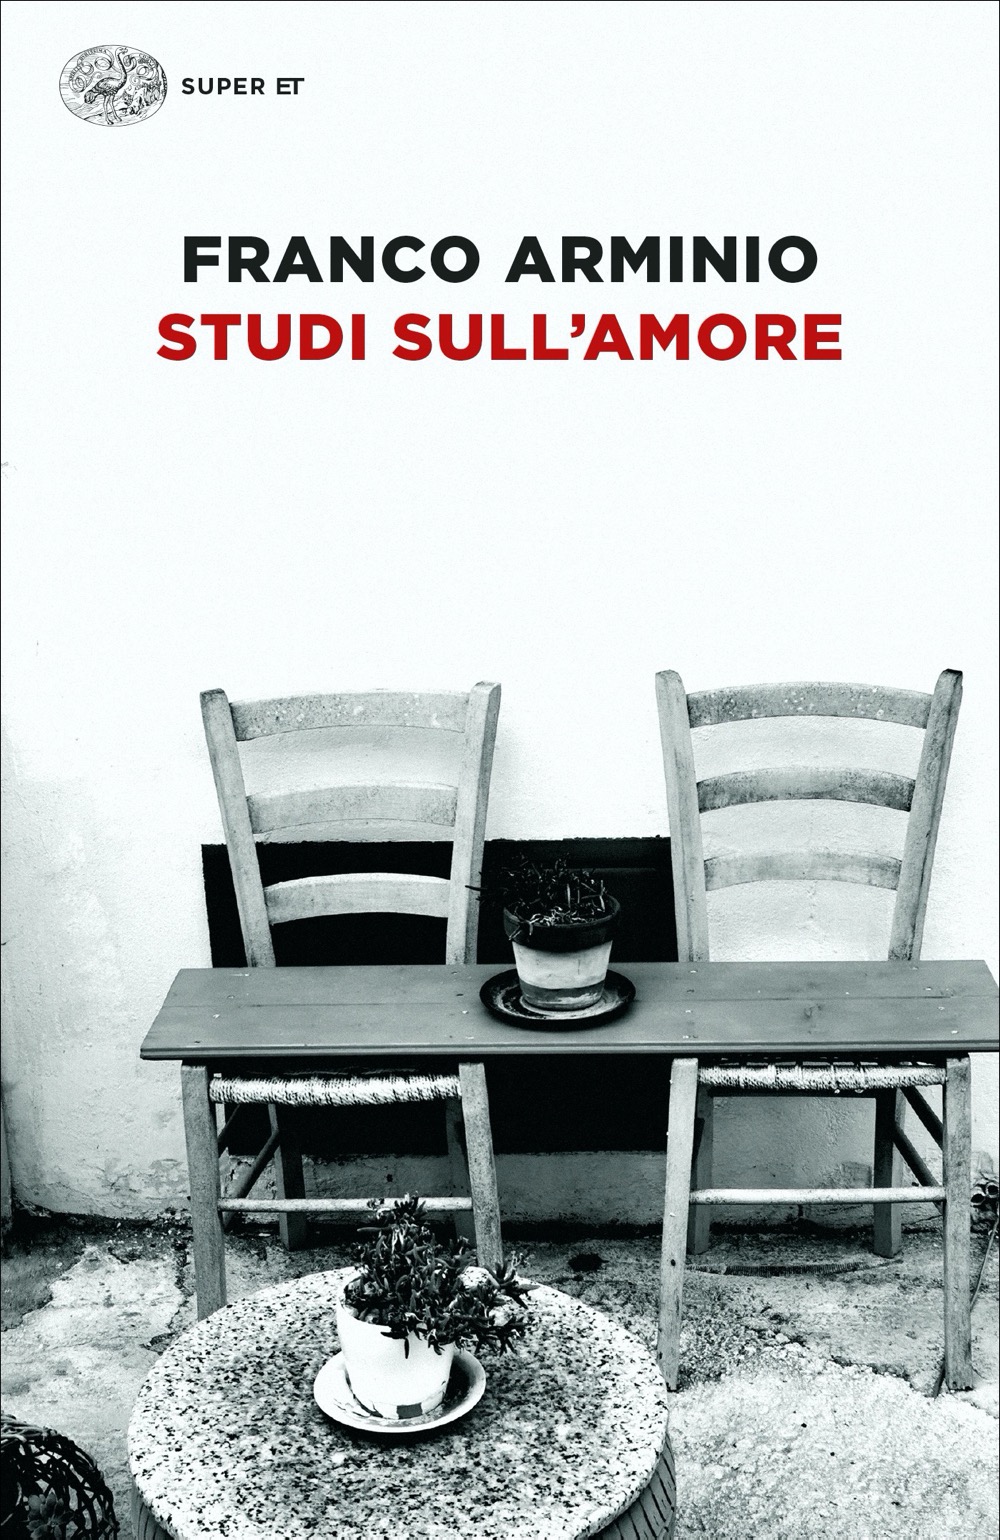 Studi sull'amore, Franco Arminio. Giulio Einaudi editore - Super ET